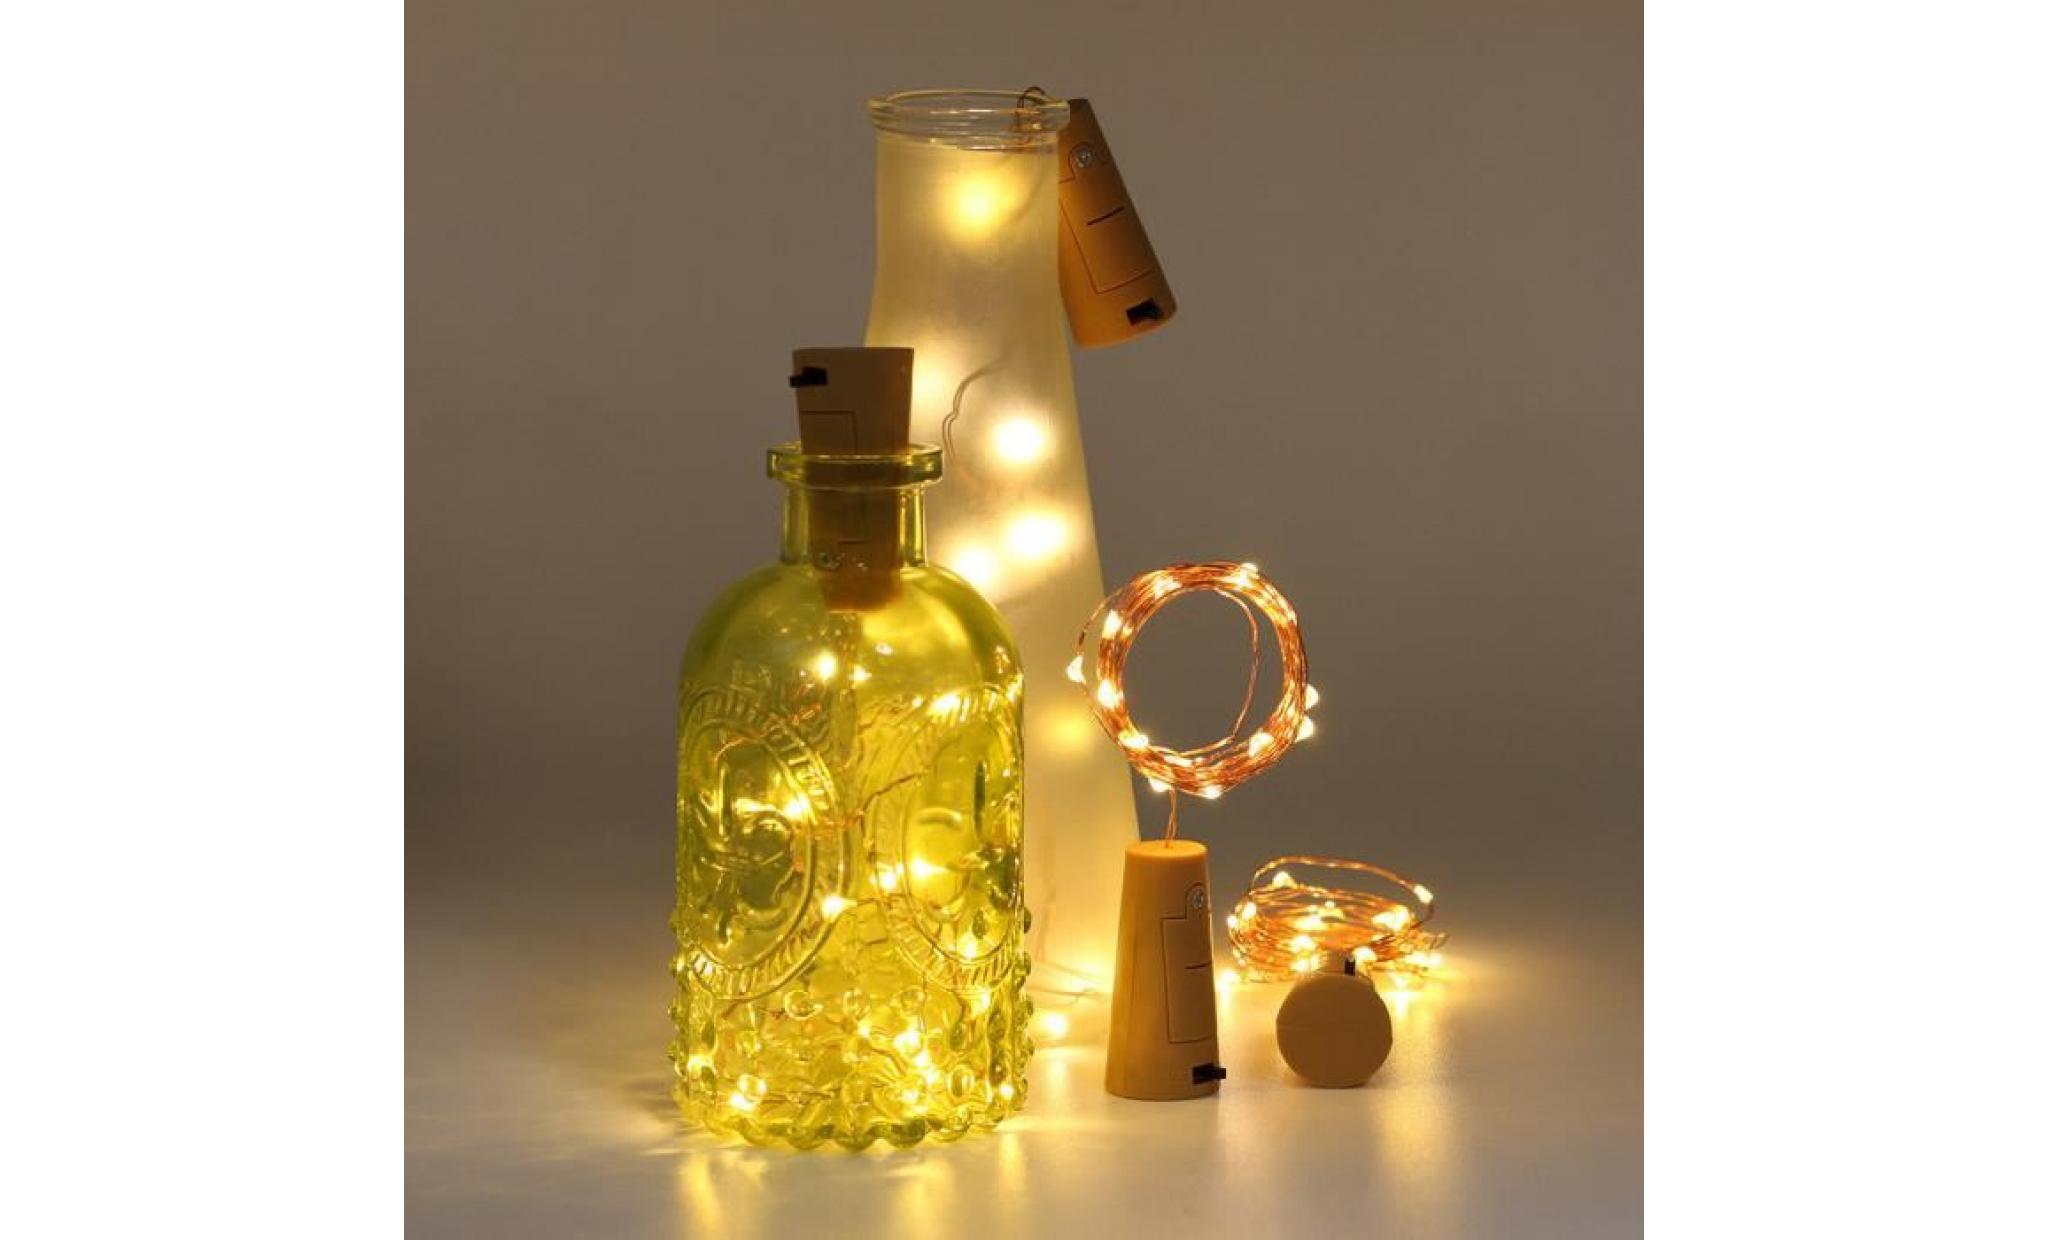 1m 10 led bottle lights cork shape for wine bottle string party romantic   @batangerr1237 pas cher